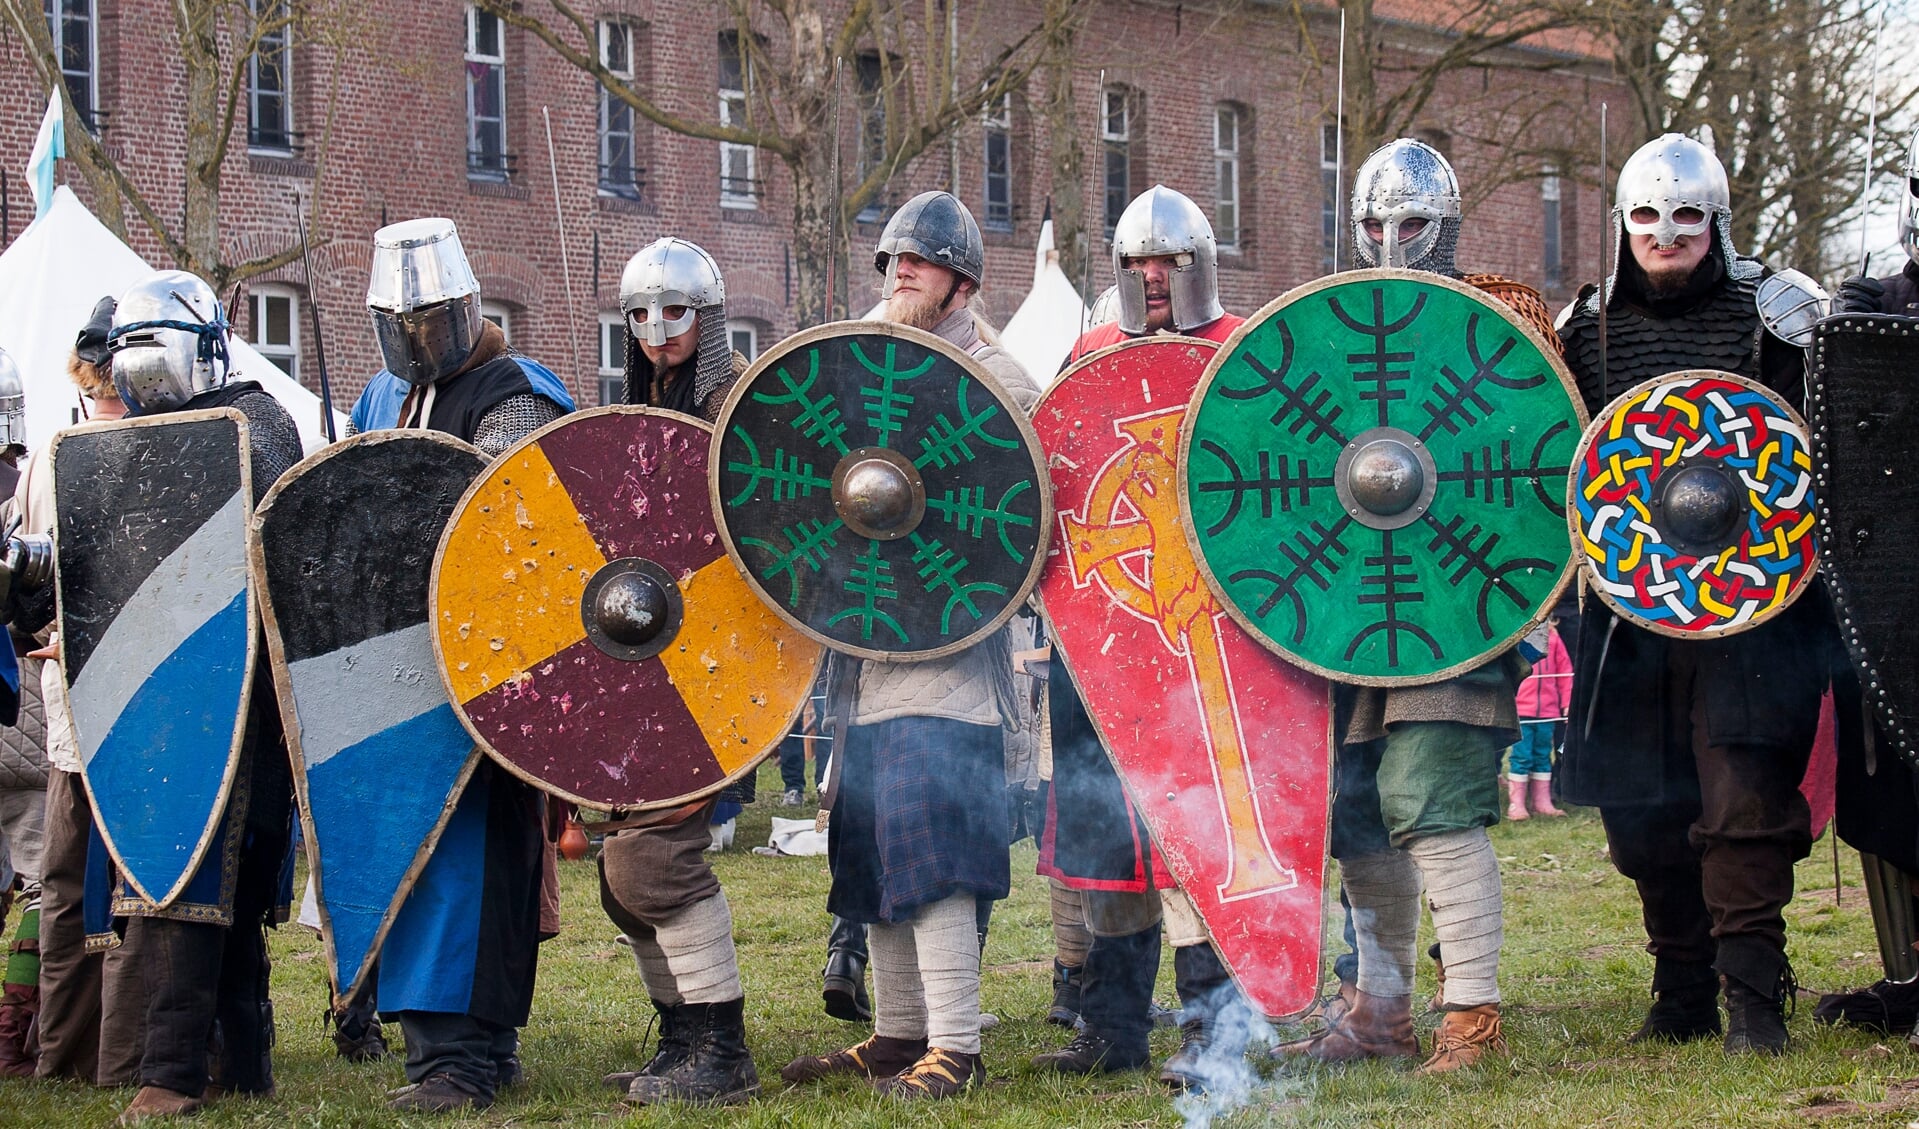 Benieuwd naar hoe een veldslag er in de middeleeuwen uitzag?